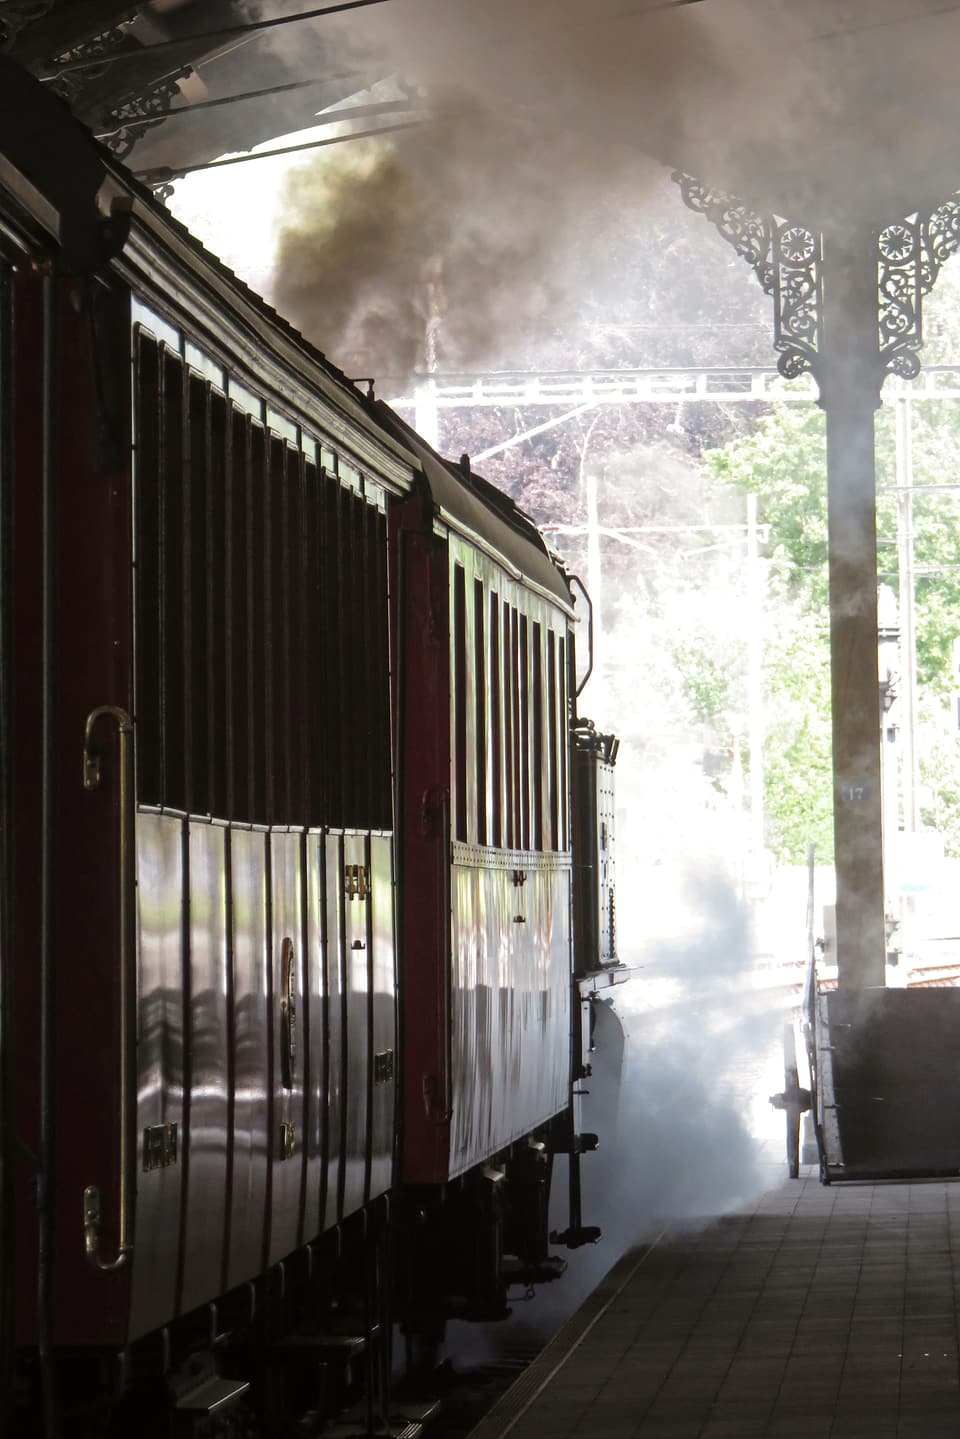 Blick von der Seite auf einen Zug, Rauchschwaden in der Luft.